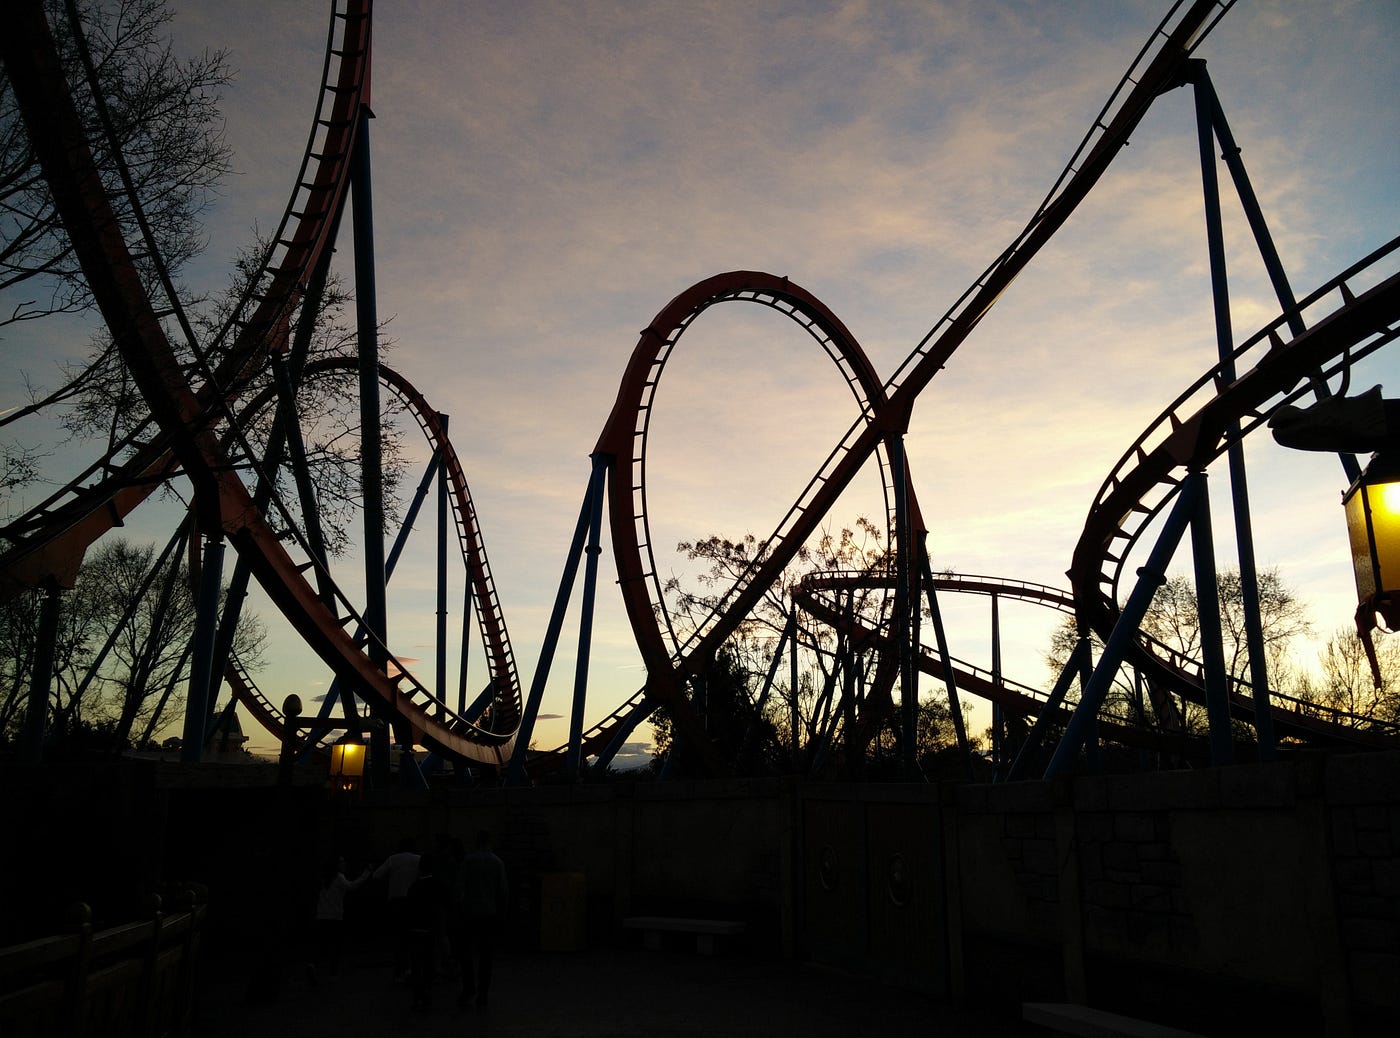 A shadow lit, multi-loop rollercoaster